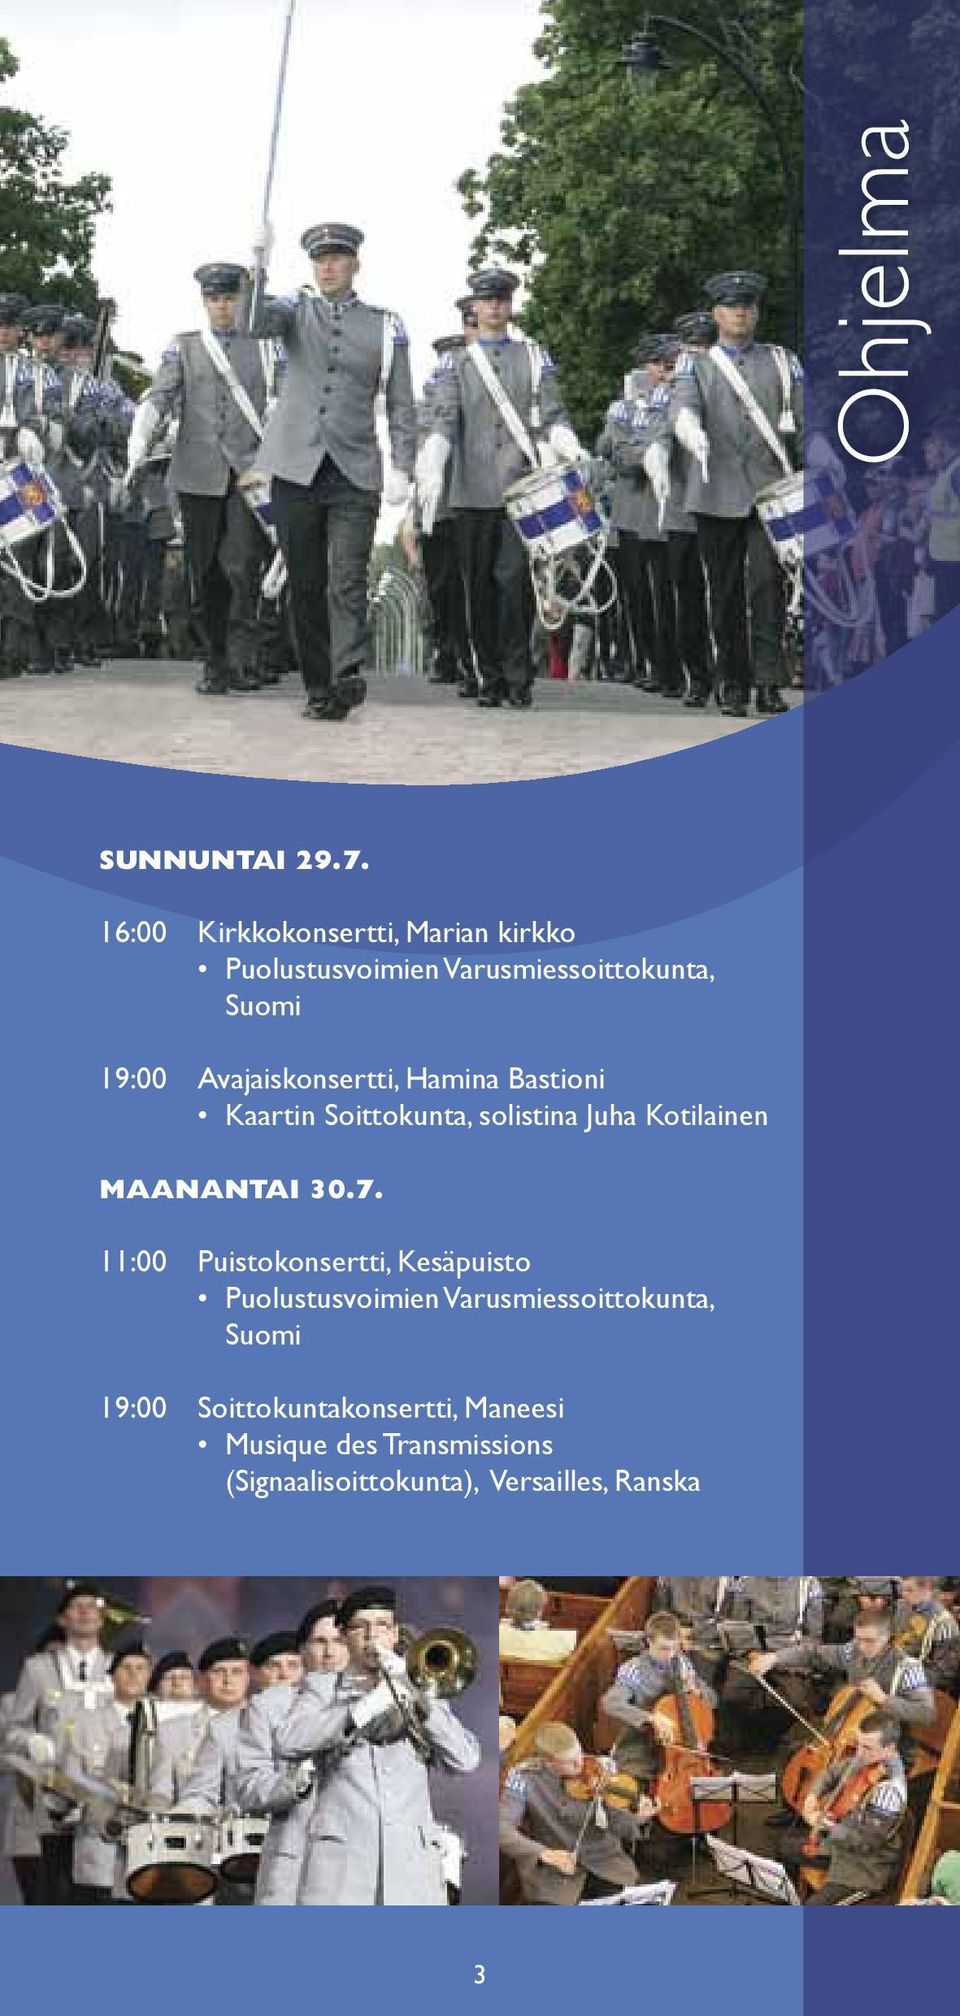 Avajaiskonsertti, Hamina Bastioni Kaartin Soittokunta, solistina Juha Kotilainen Maanantai 30.7.